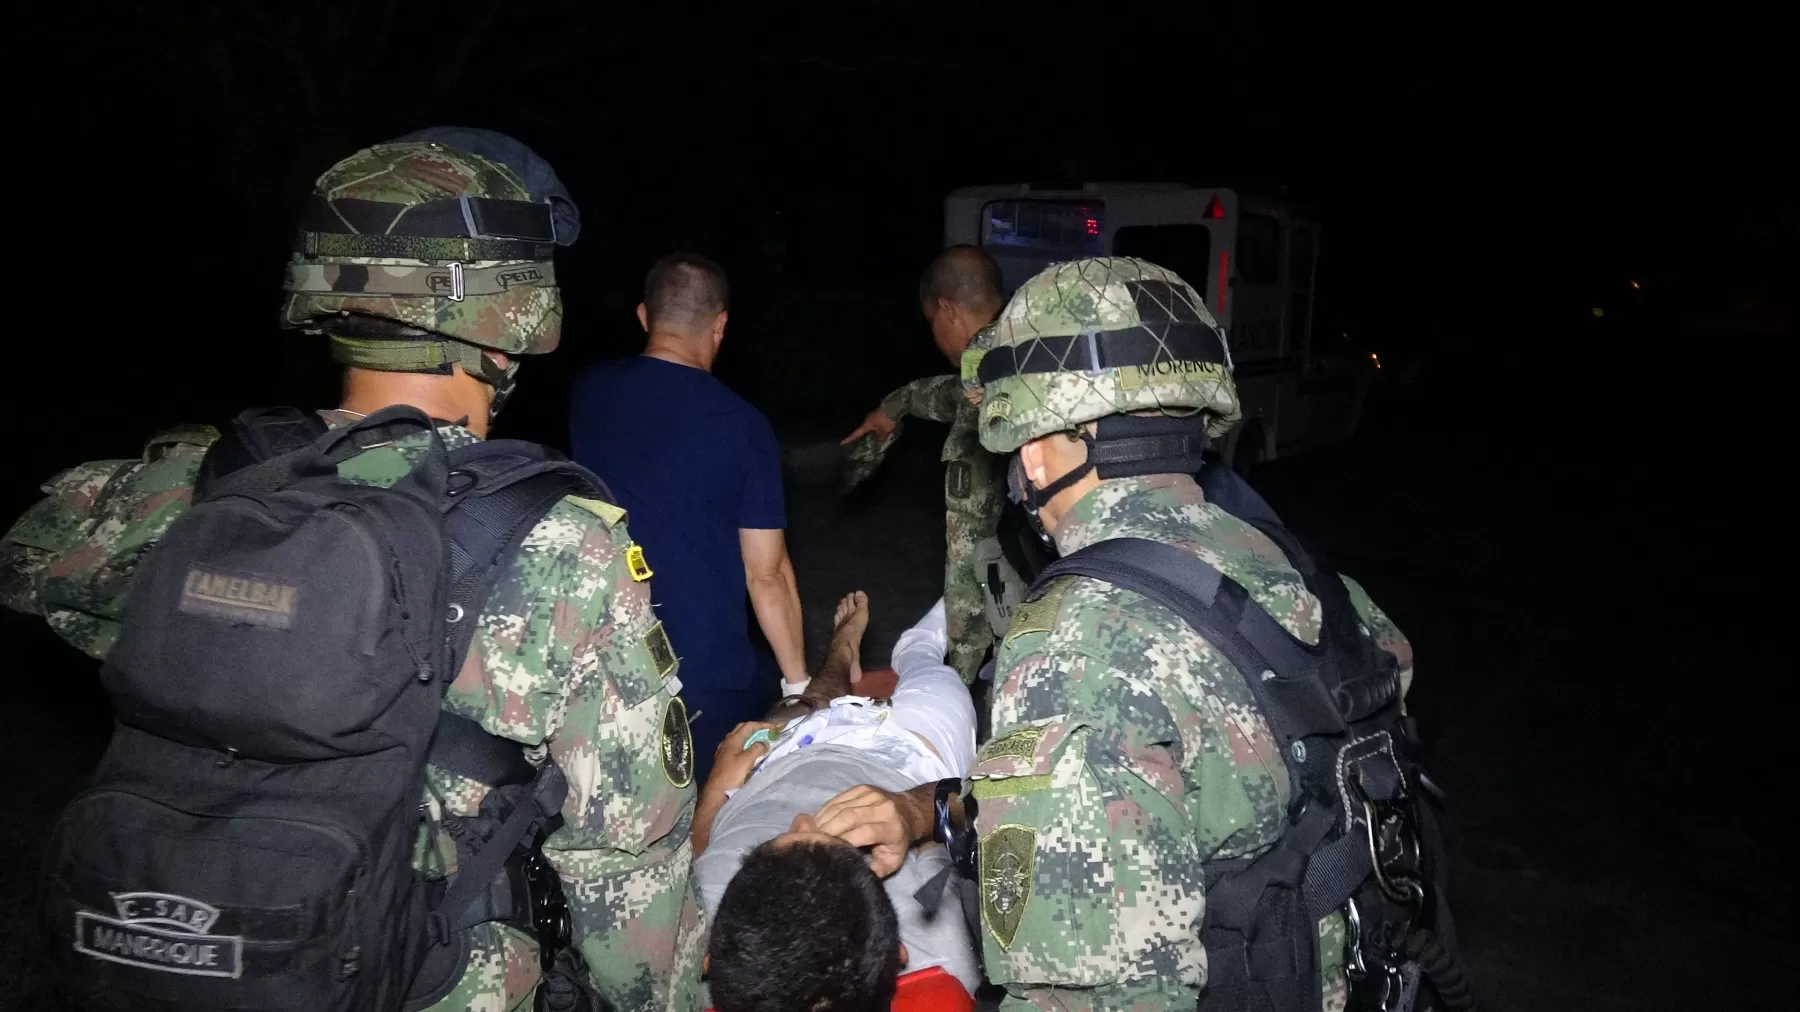 Ejército Nacional reportó la captura de un guerrillero conocido con el alias de "La Muerte", sindicado de cometer homicidios en el eje vial de Saravena - Tame, en el departamento de Arauca.